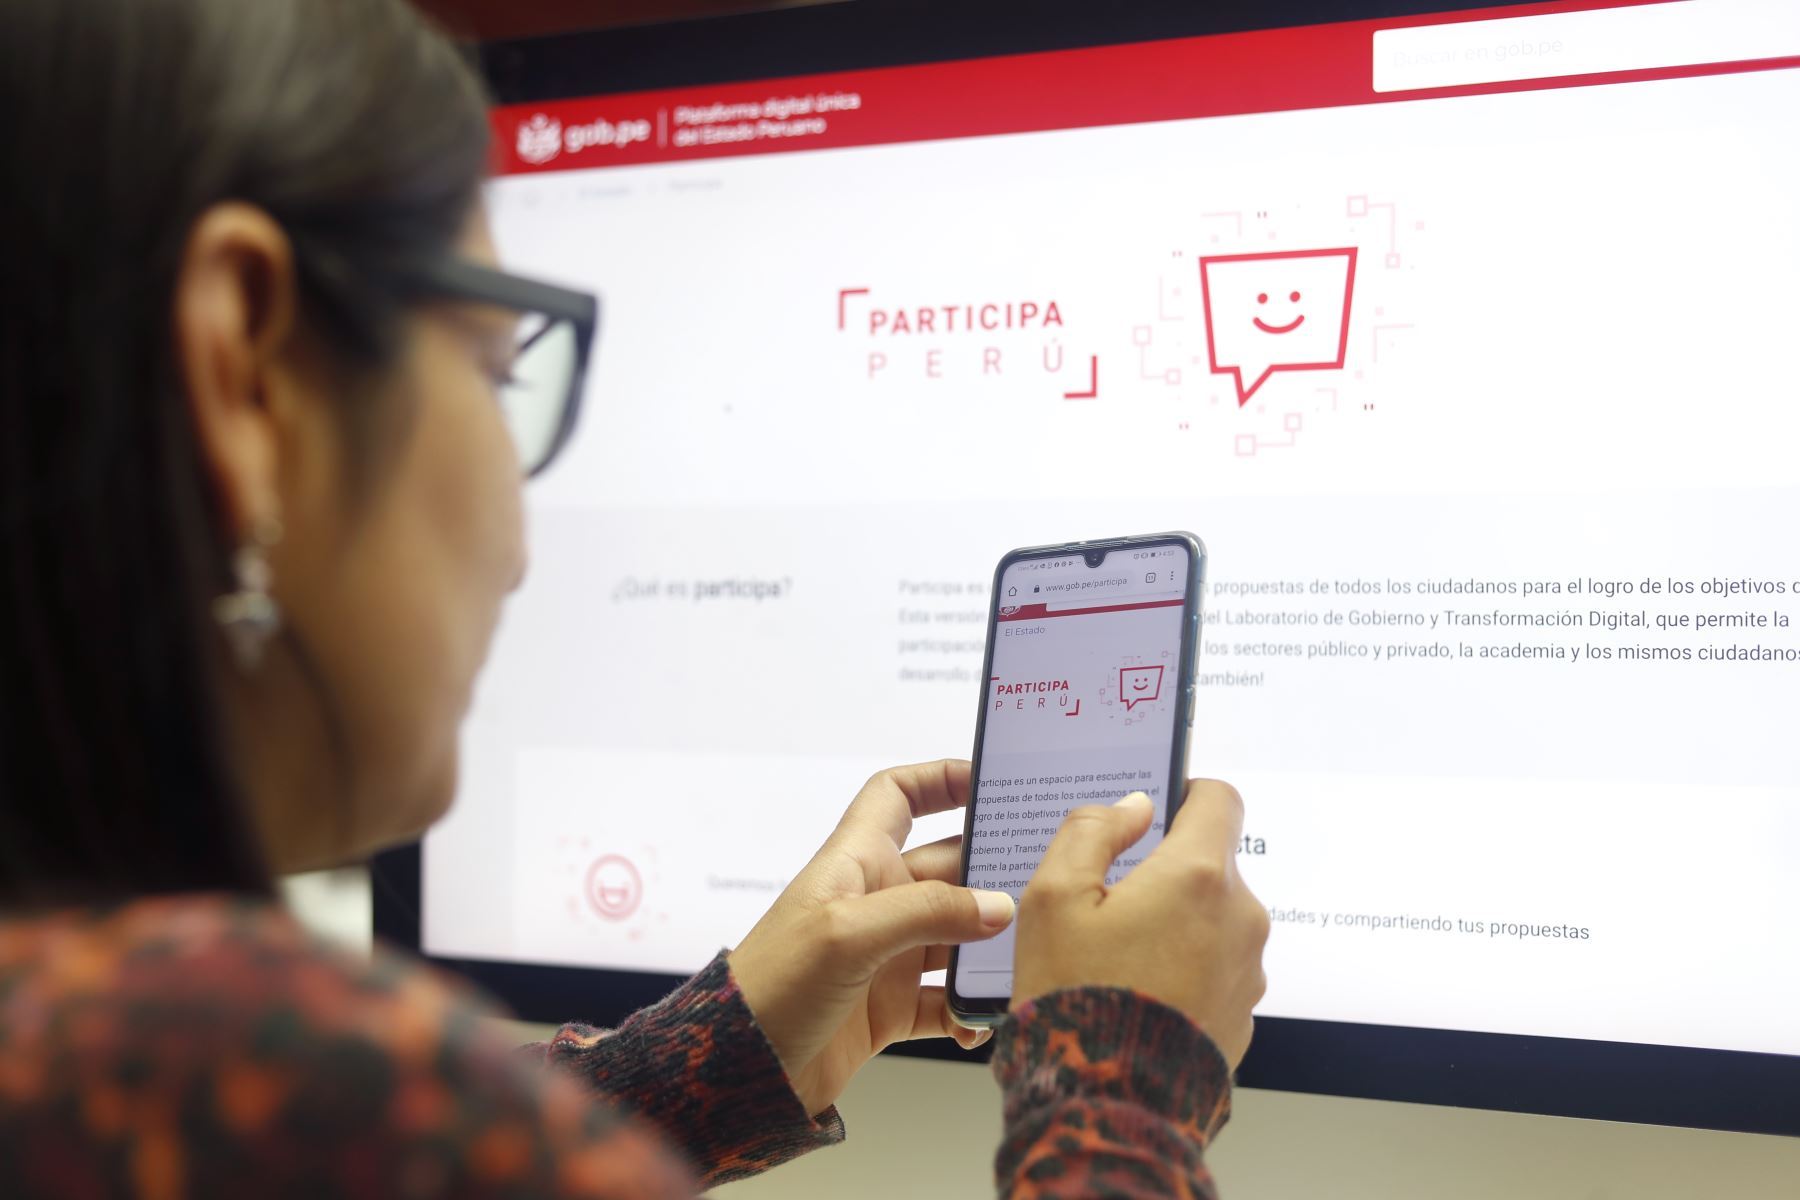 Perú apuesta por fomentar talento digital y avanza hacia servicios digitales predictivos